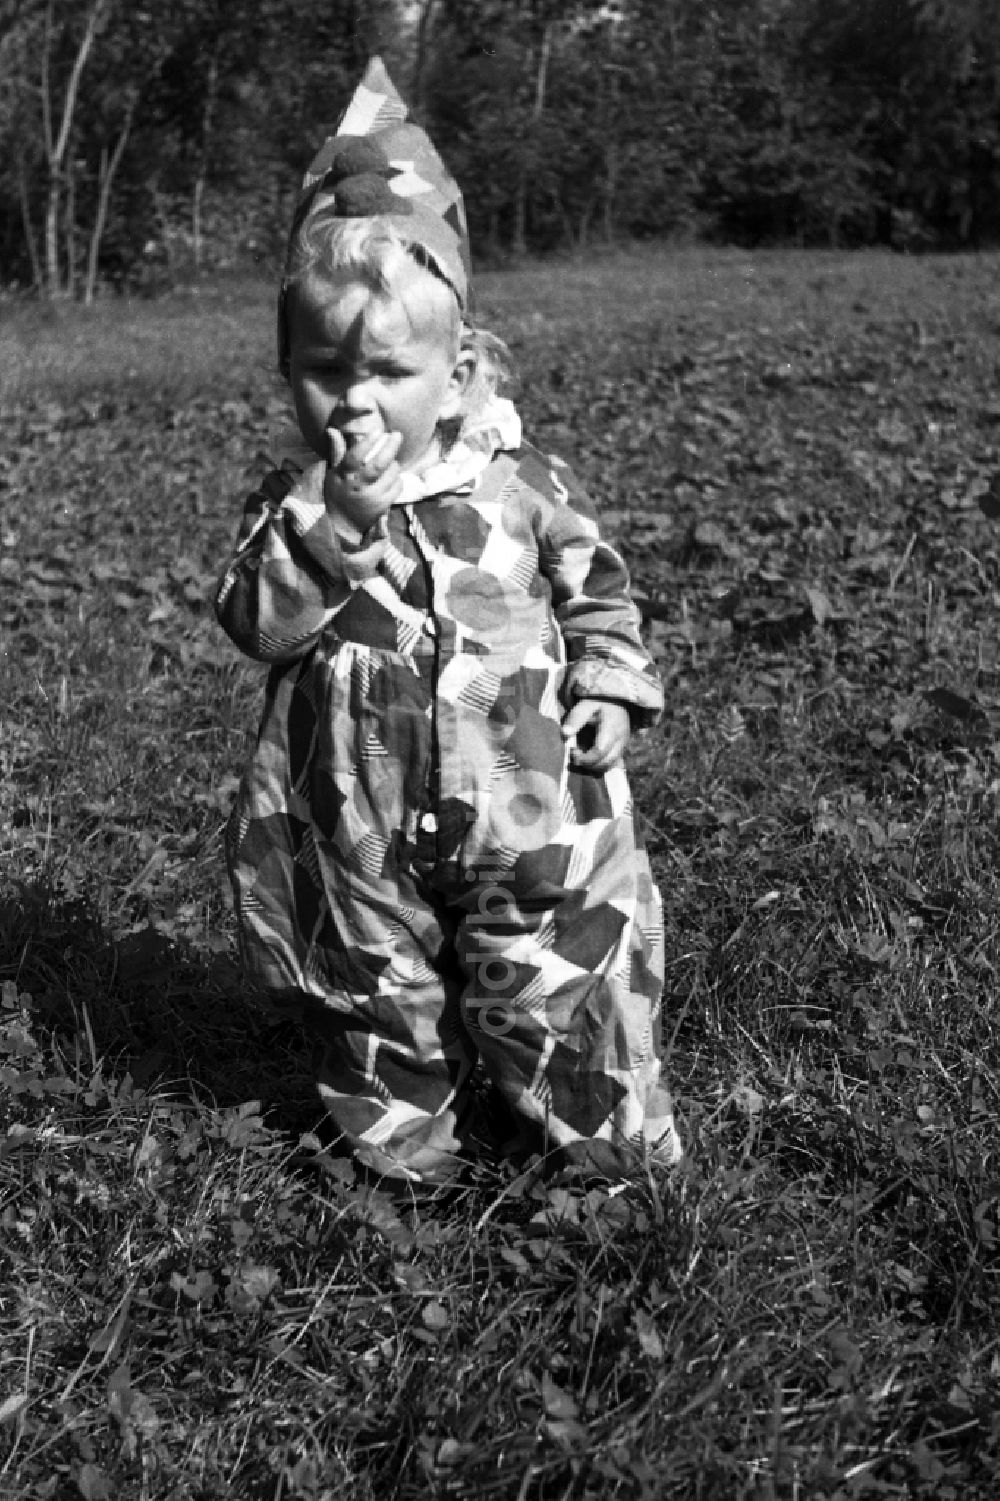 DDR-Bildarchiv: Merseburg - Kleines Kind verkleidet als Clown in Merseburg in Sachsen-Anhalt in Deutschland